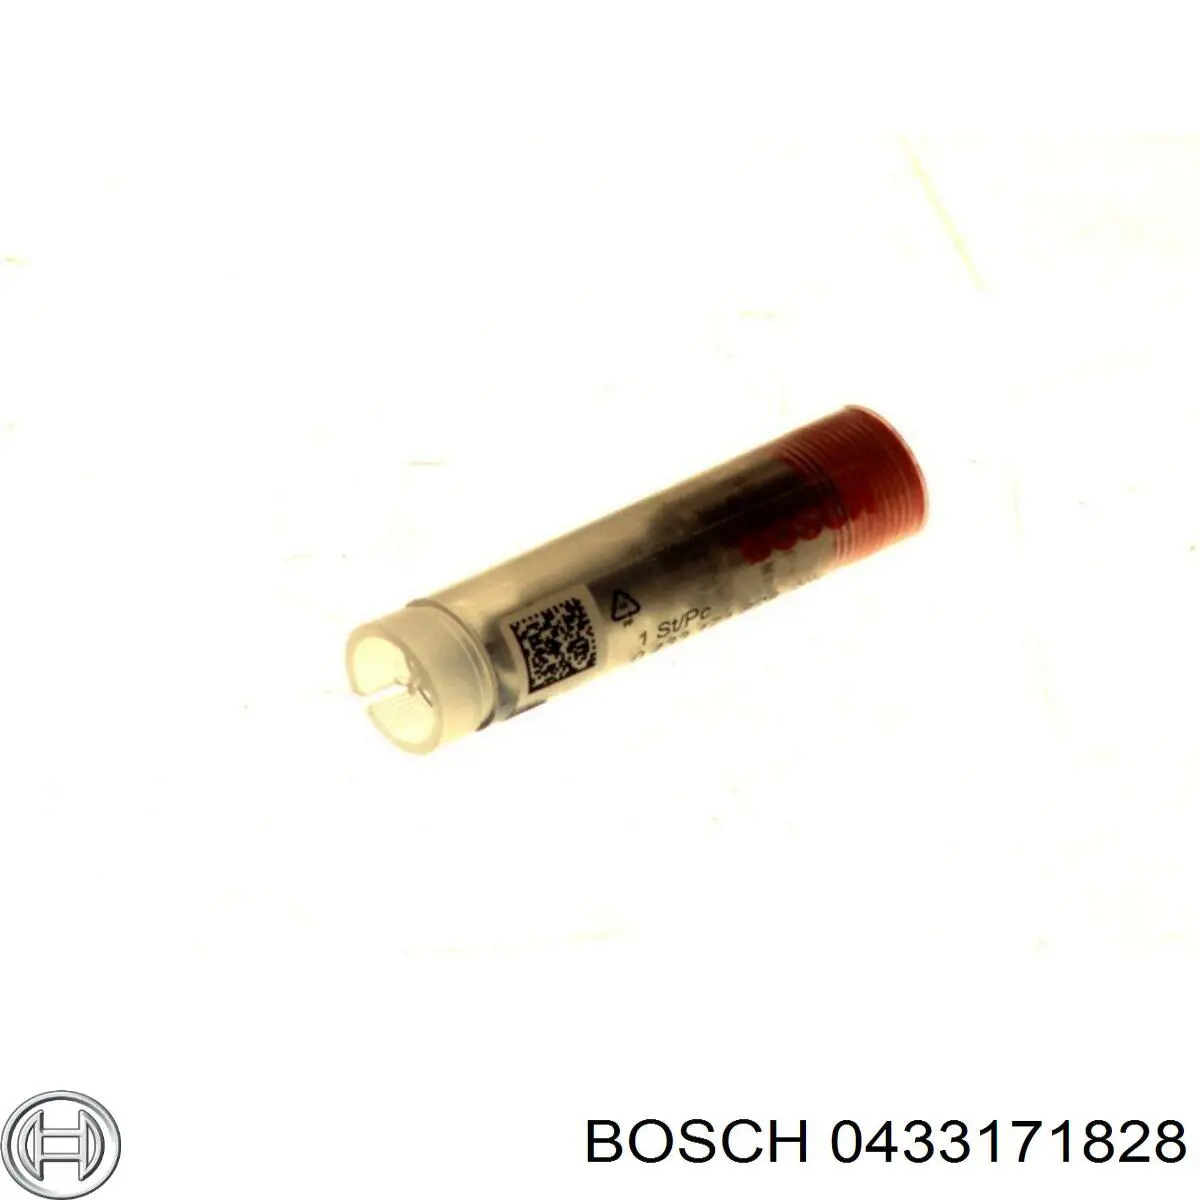 433171828 Bosch injetor de injeção de combustível